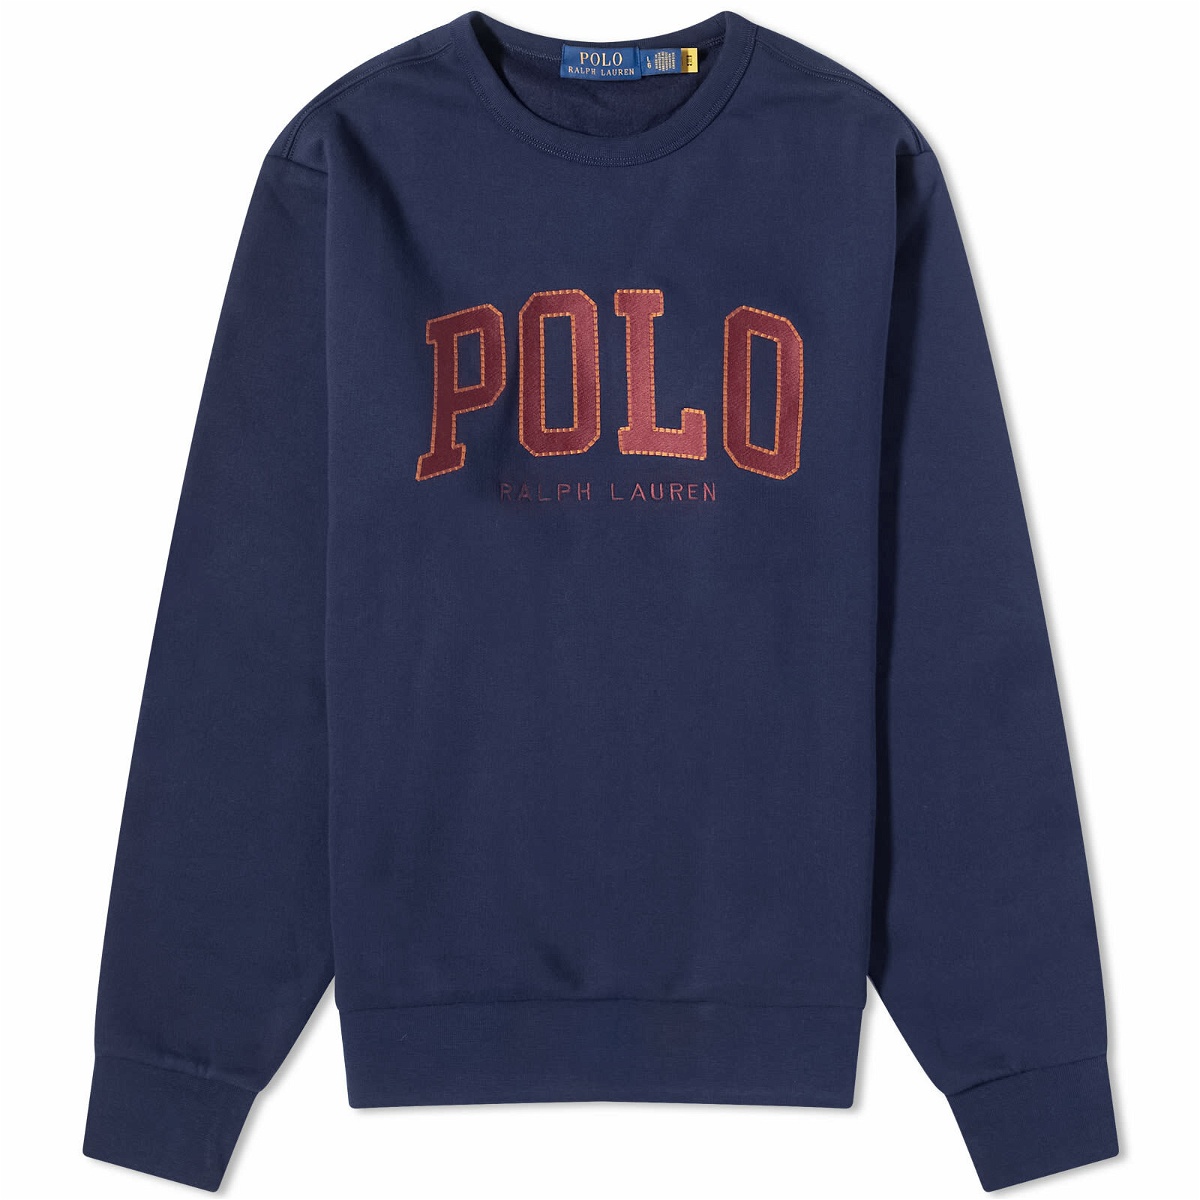 POLO RALPH LAUREN Wimbledon Logo-Embroidered Cotton-Blend Piqué Polo Shirt  for Men